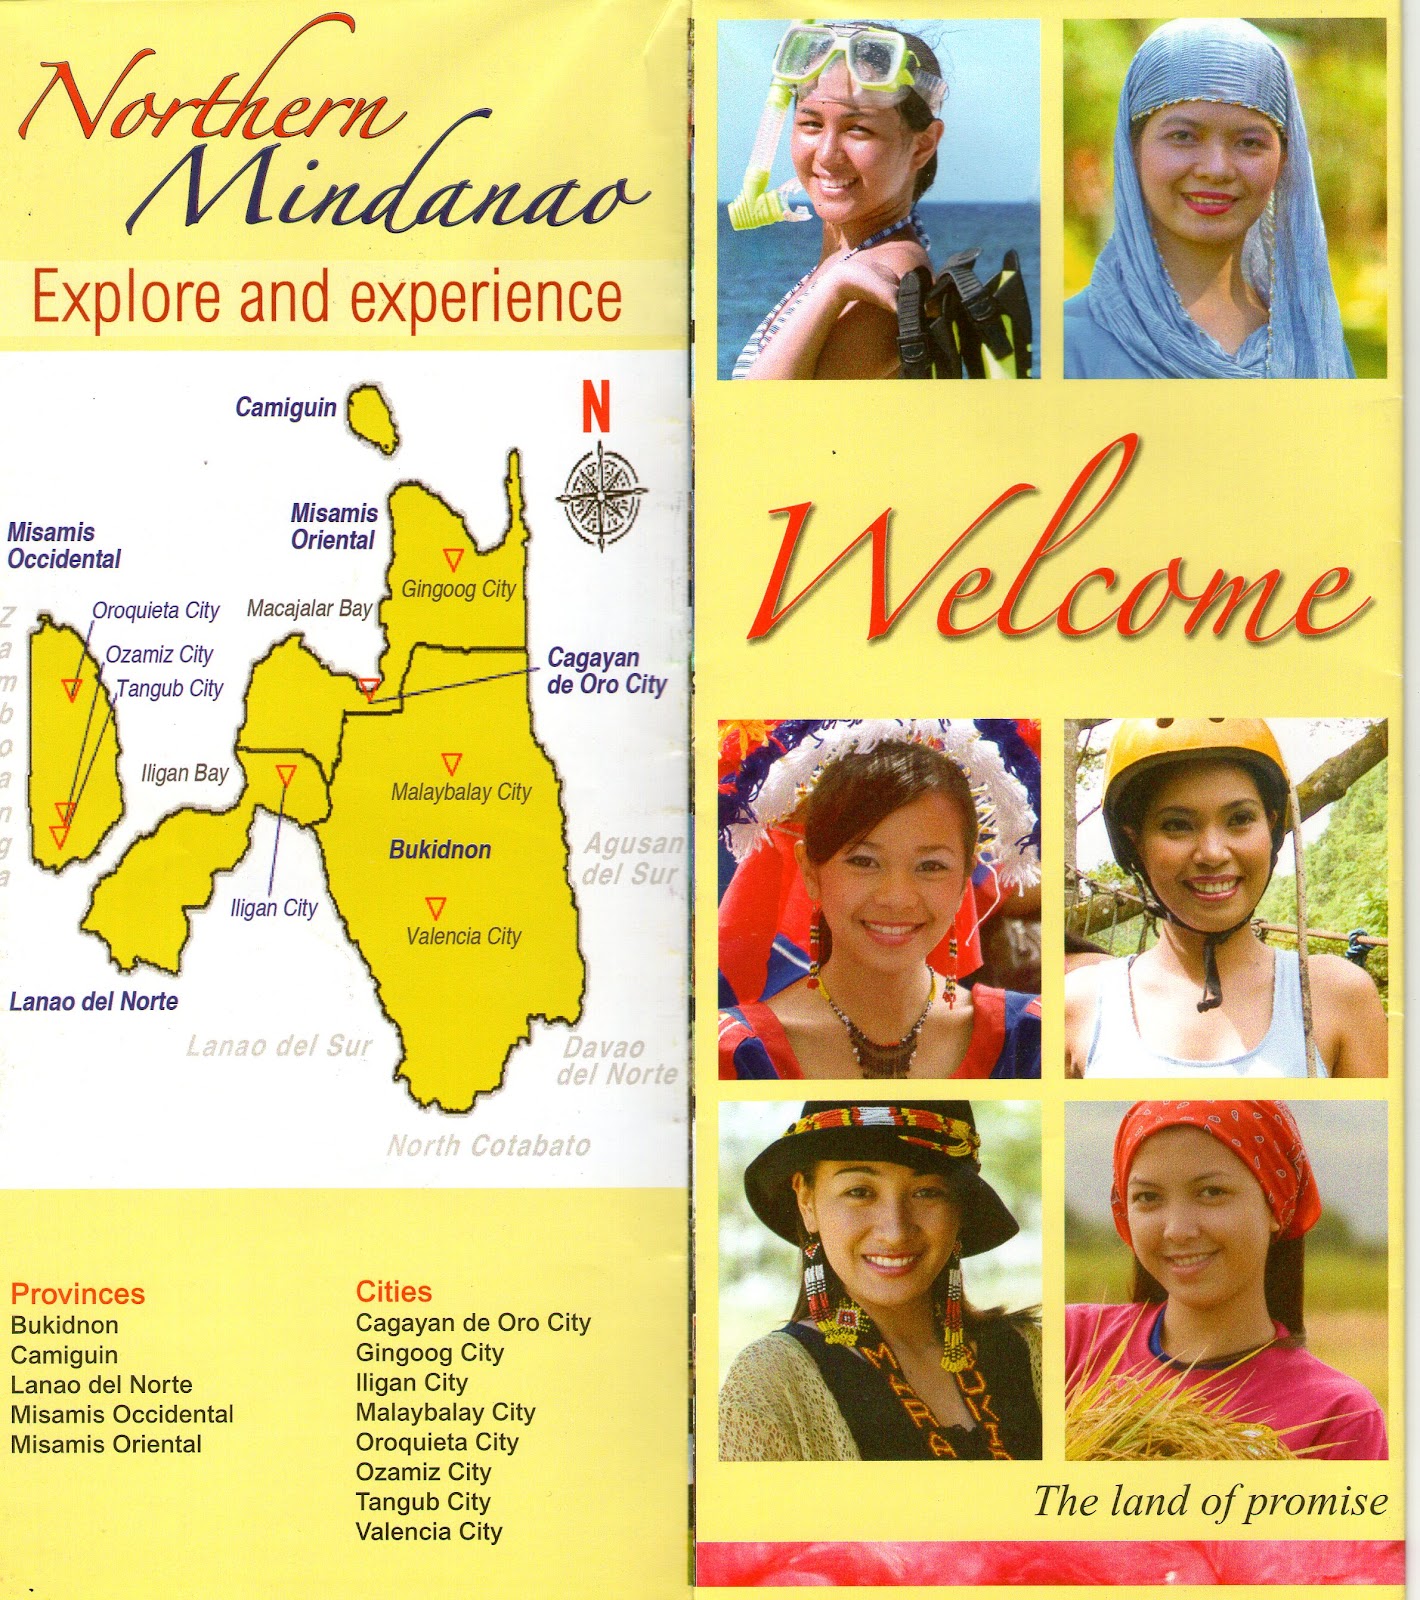 ano ang tagalog ng travel brochure in mindanao